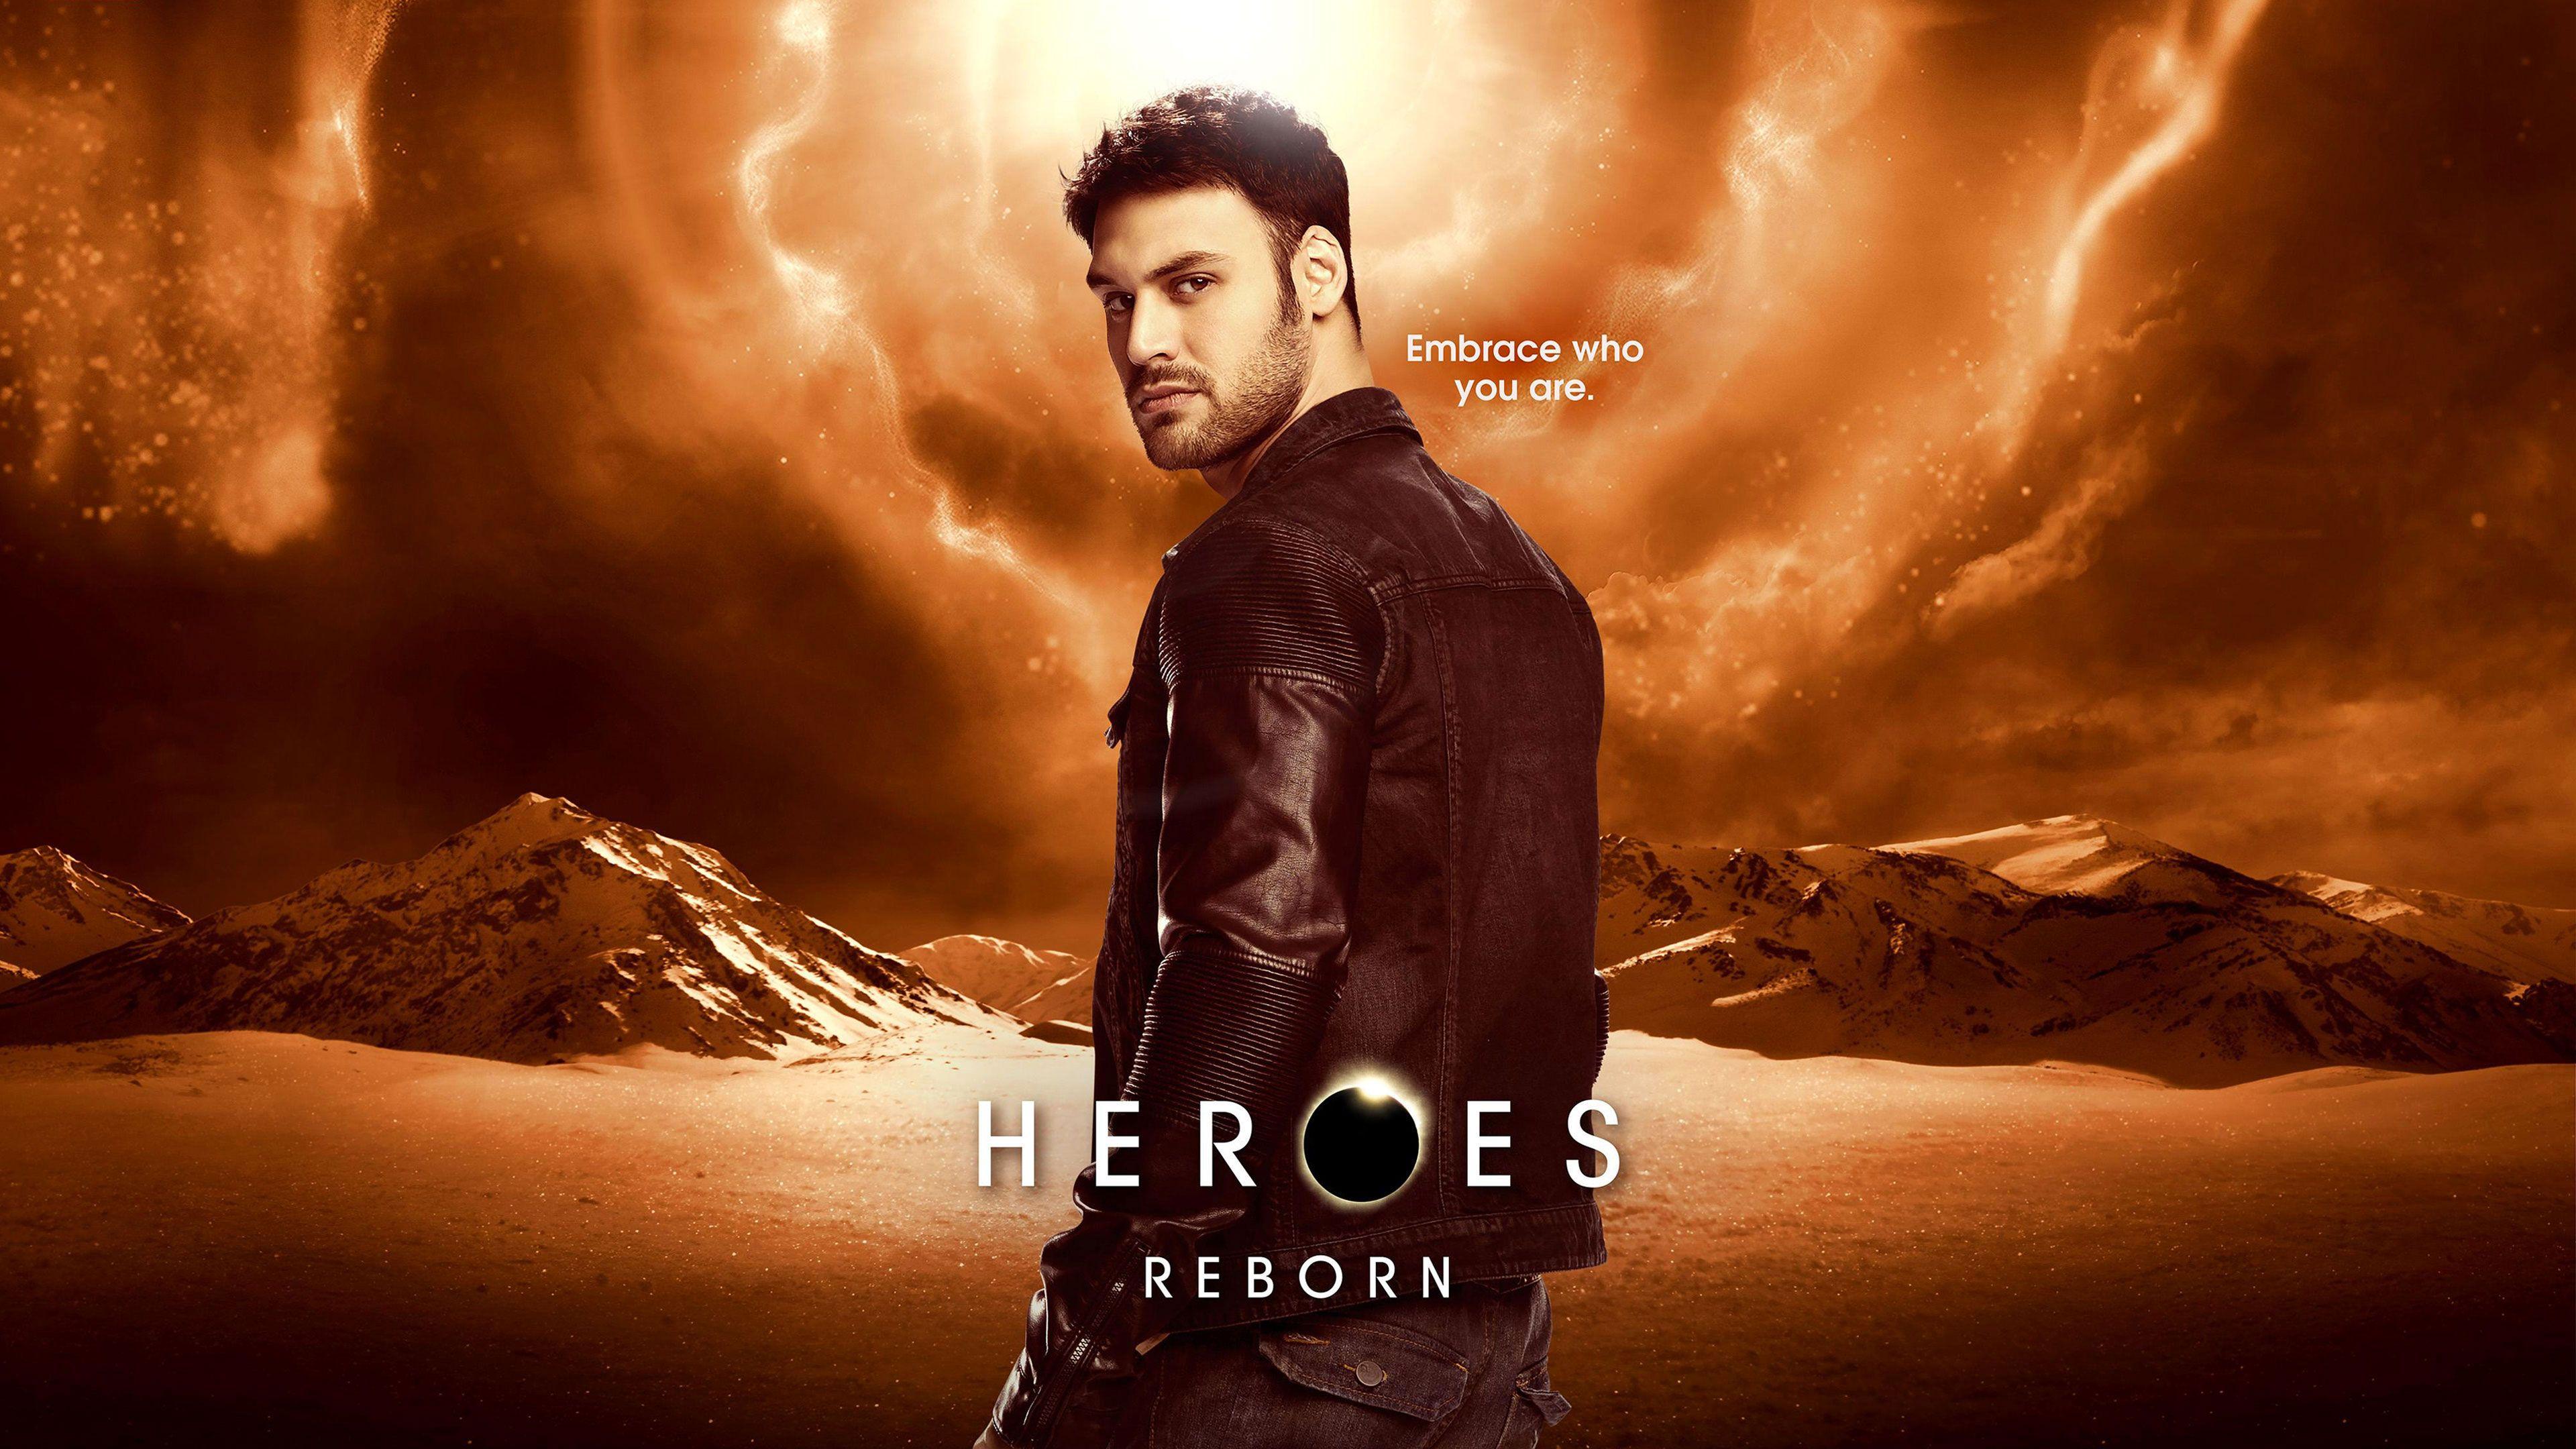 Heroes Reborn Carlos 16 9 Ultra HD, UHD